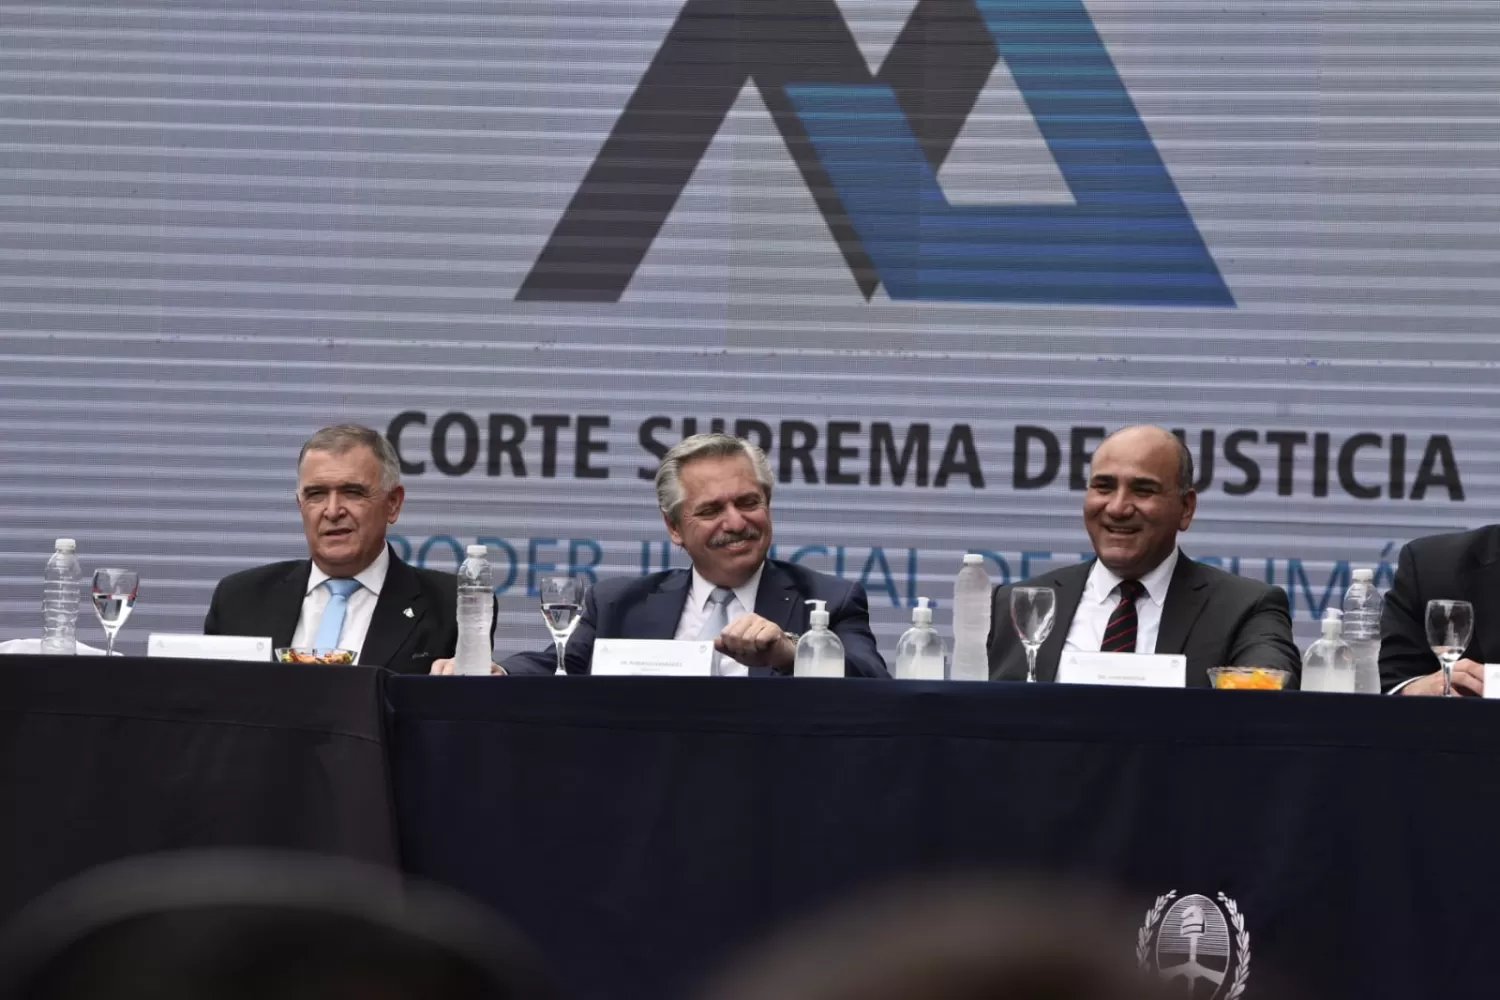 EN MONTEROS. Alberto Fernández brindó un discurso, acompañado por Manzur y por Jaldo. Foto LA GACETA / OSVALDO RIPOLL